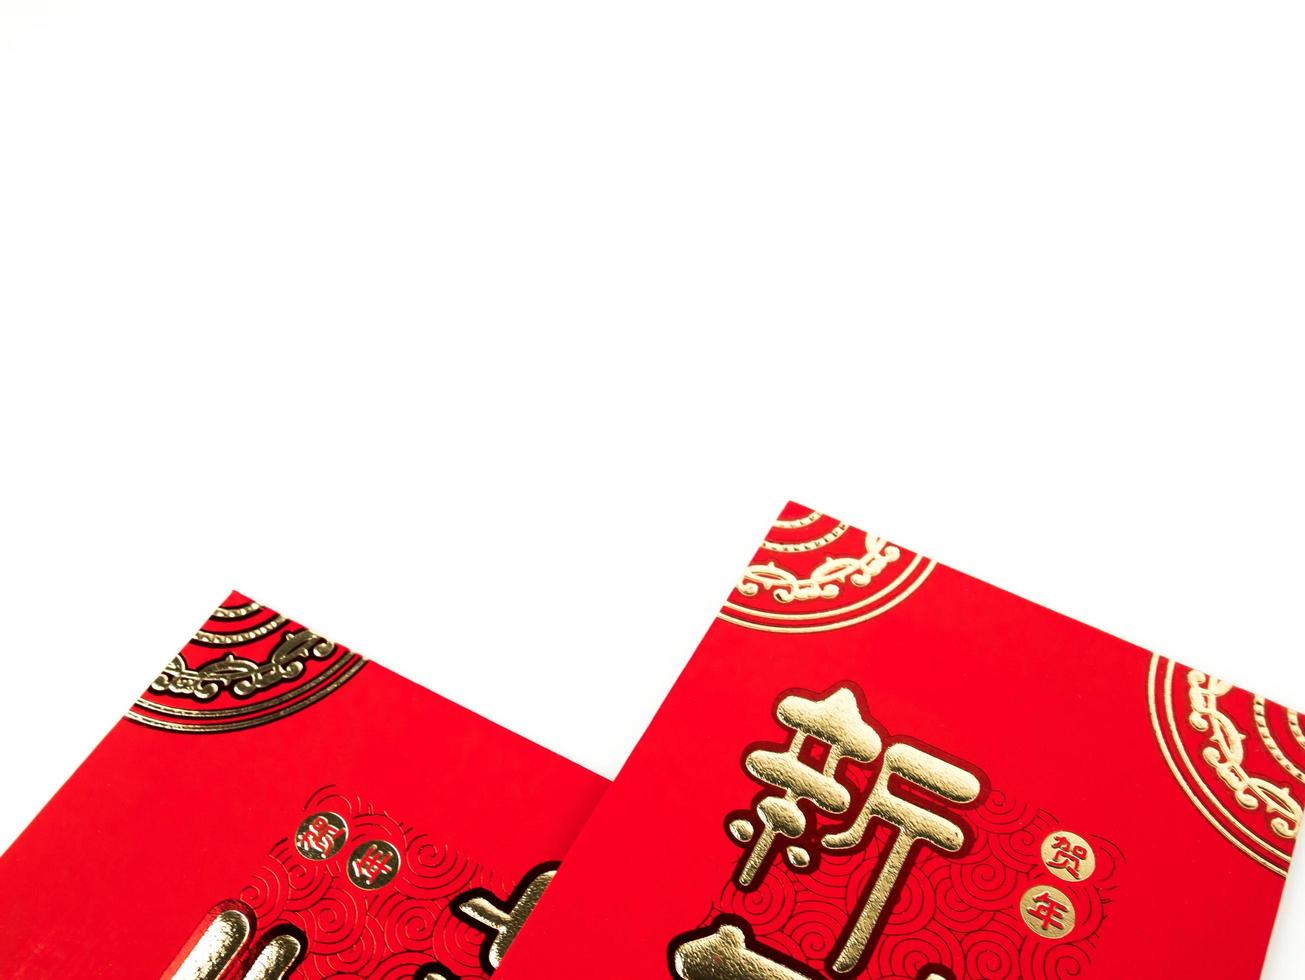 busta rossa isolata su sfondo bianco per regalo capodanno cinese. testo cinese sulla busta che significa felice anno nuovo cinese foto